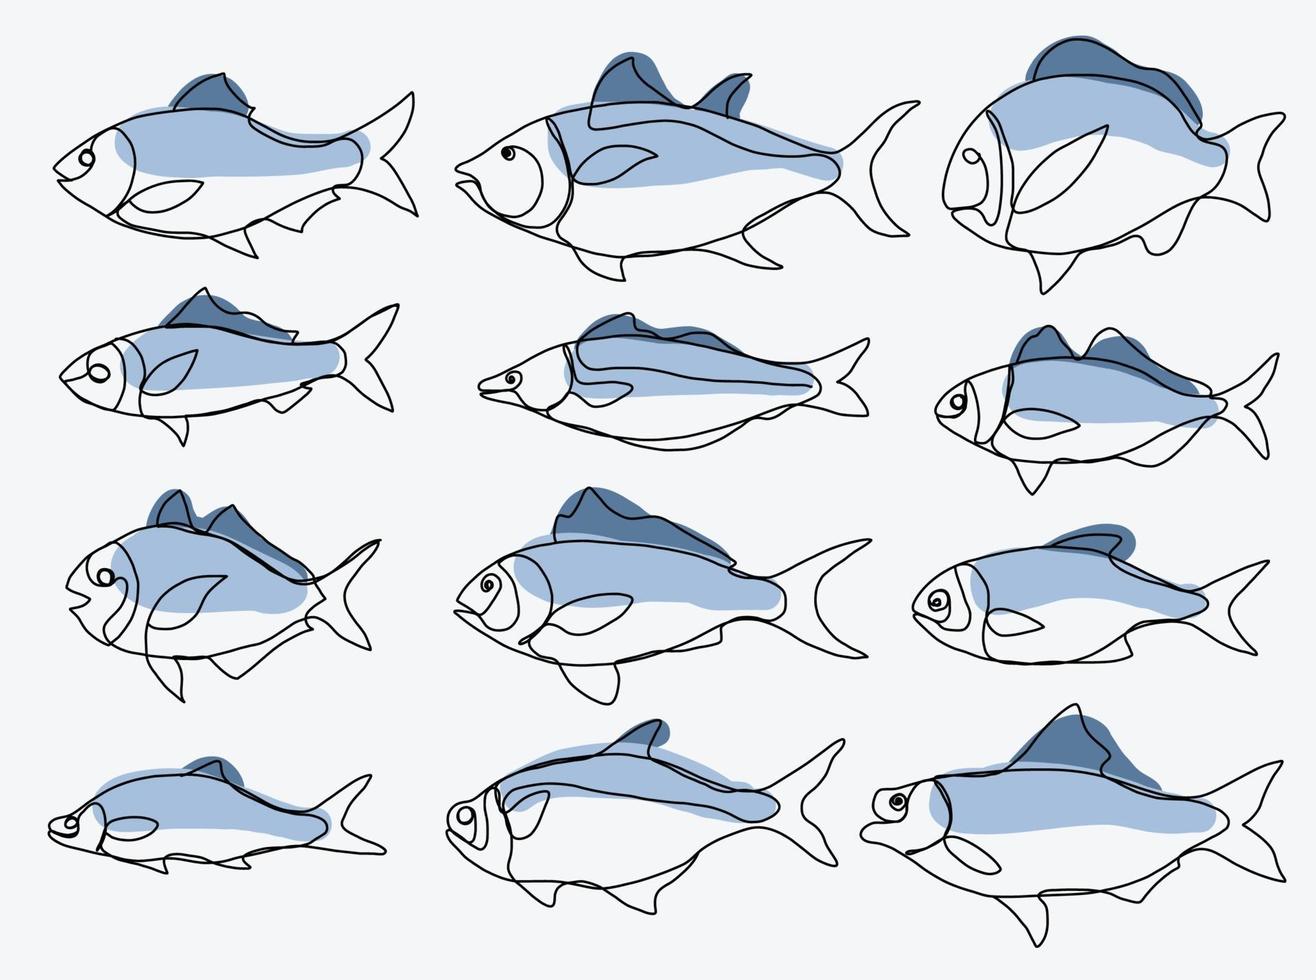 doodle croquis à main levée dessin continu de la collection de poissons. vecteur